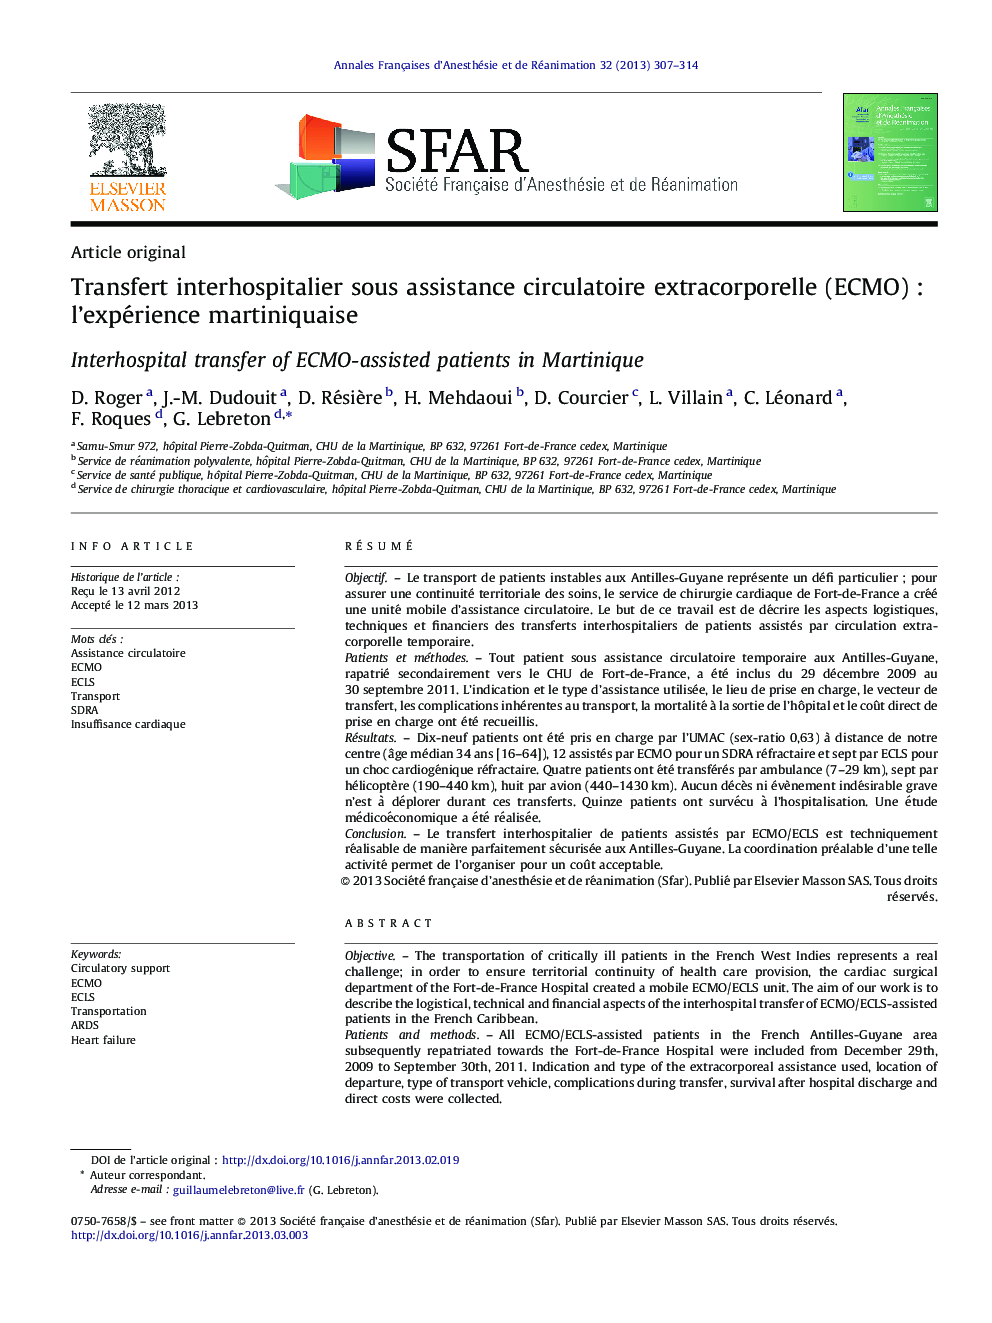 Transfert interhospitalier sous assistance circulatoire extracorporelle (ECMO) : l’expérience martiniquaise